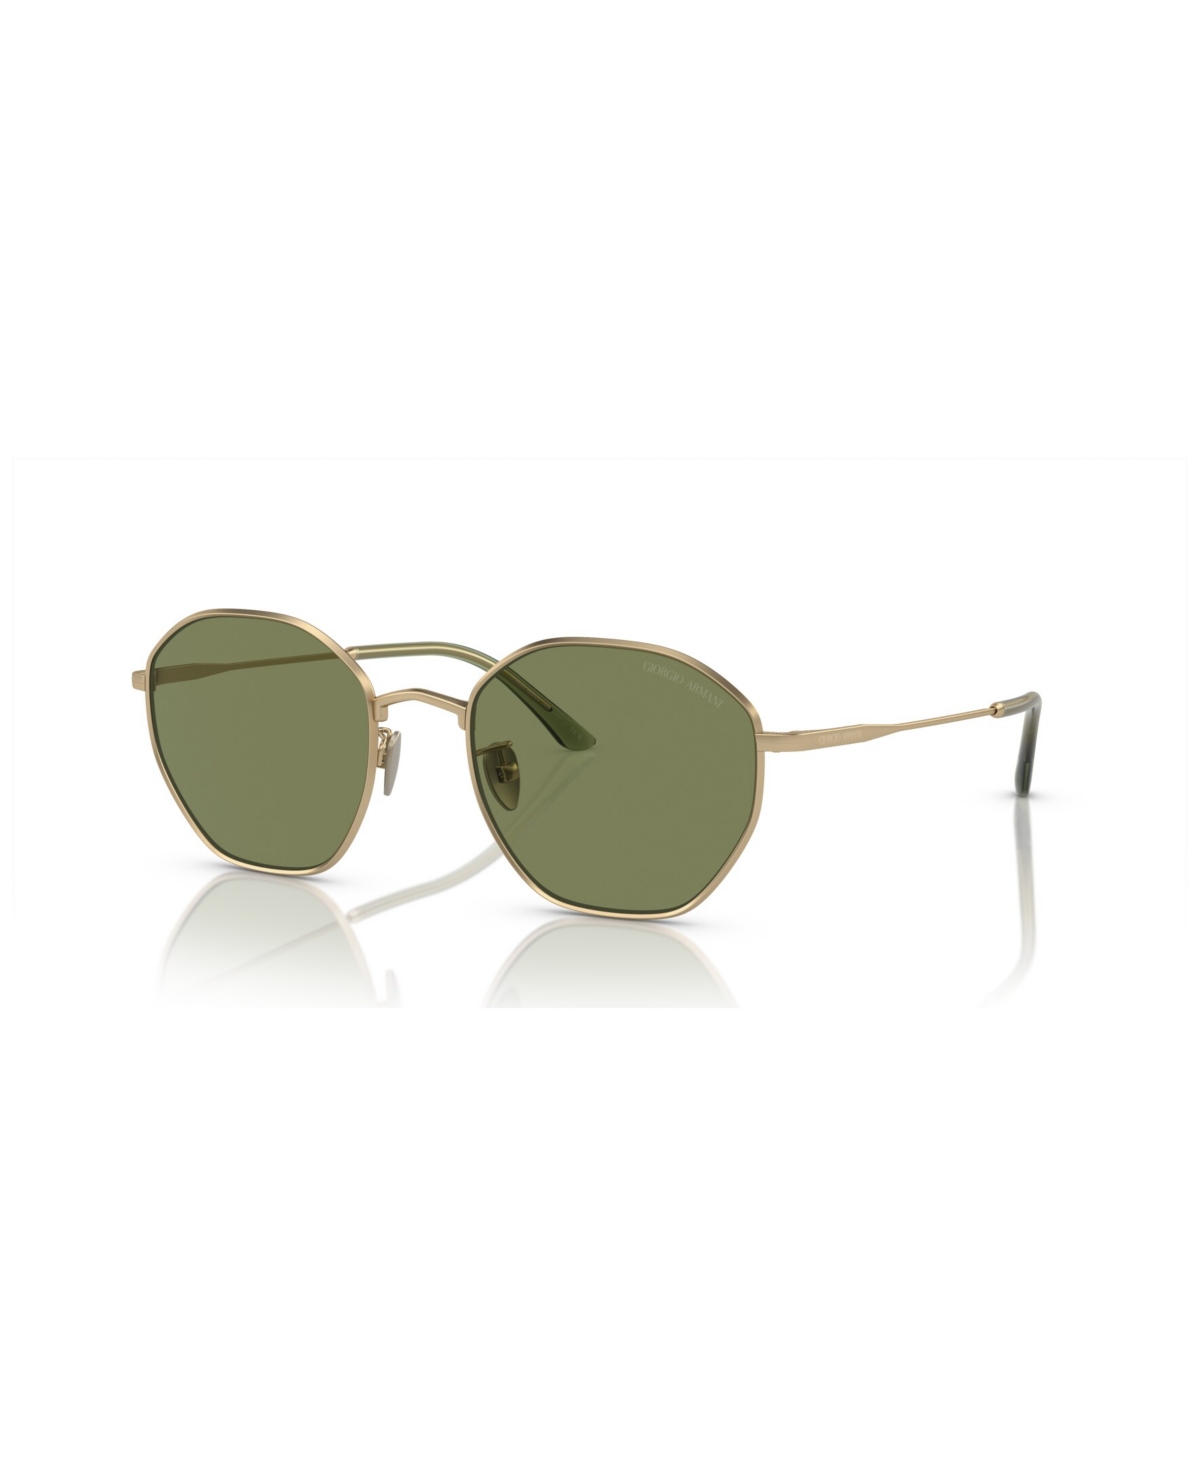 Giorgio Armani Men's Sunglasses Ar6150 In Matte Pale Gold